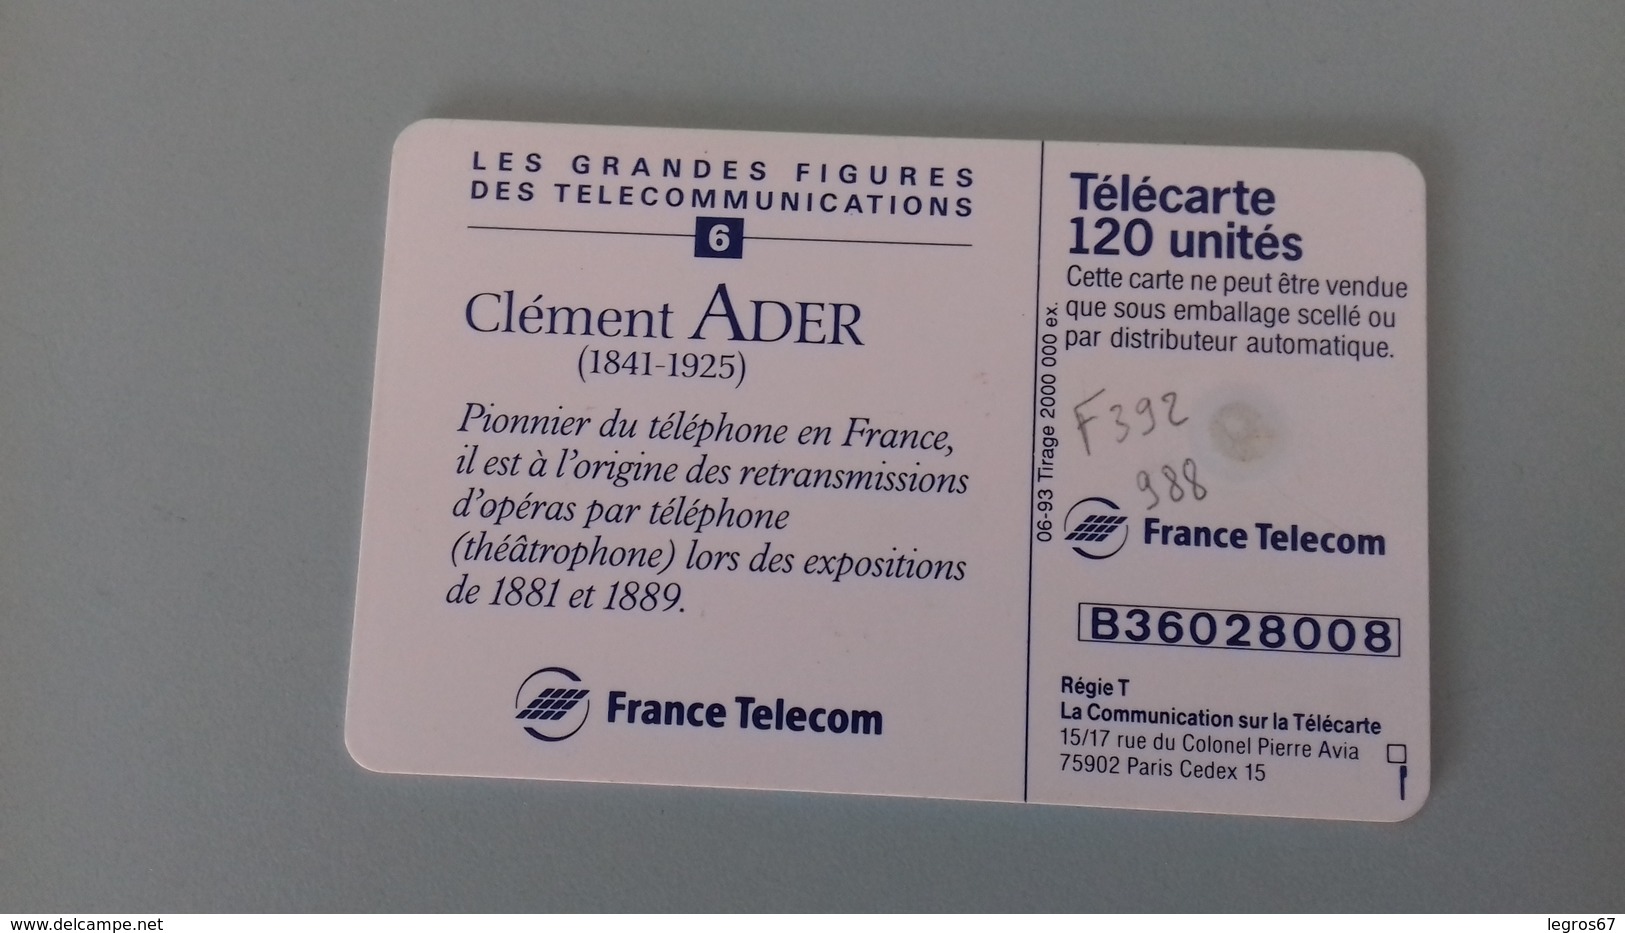 TELECARTE F 392 988 - ADER FIGURES TELECOM 6 - 120 Units